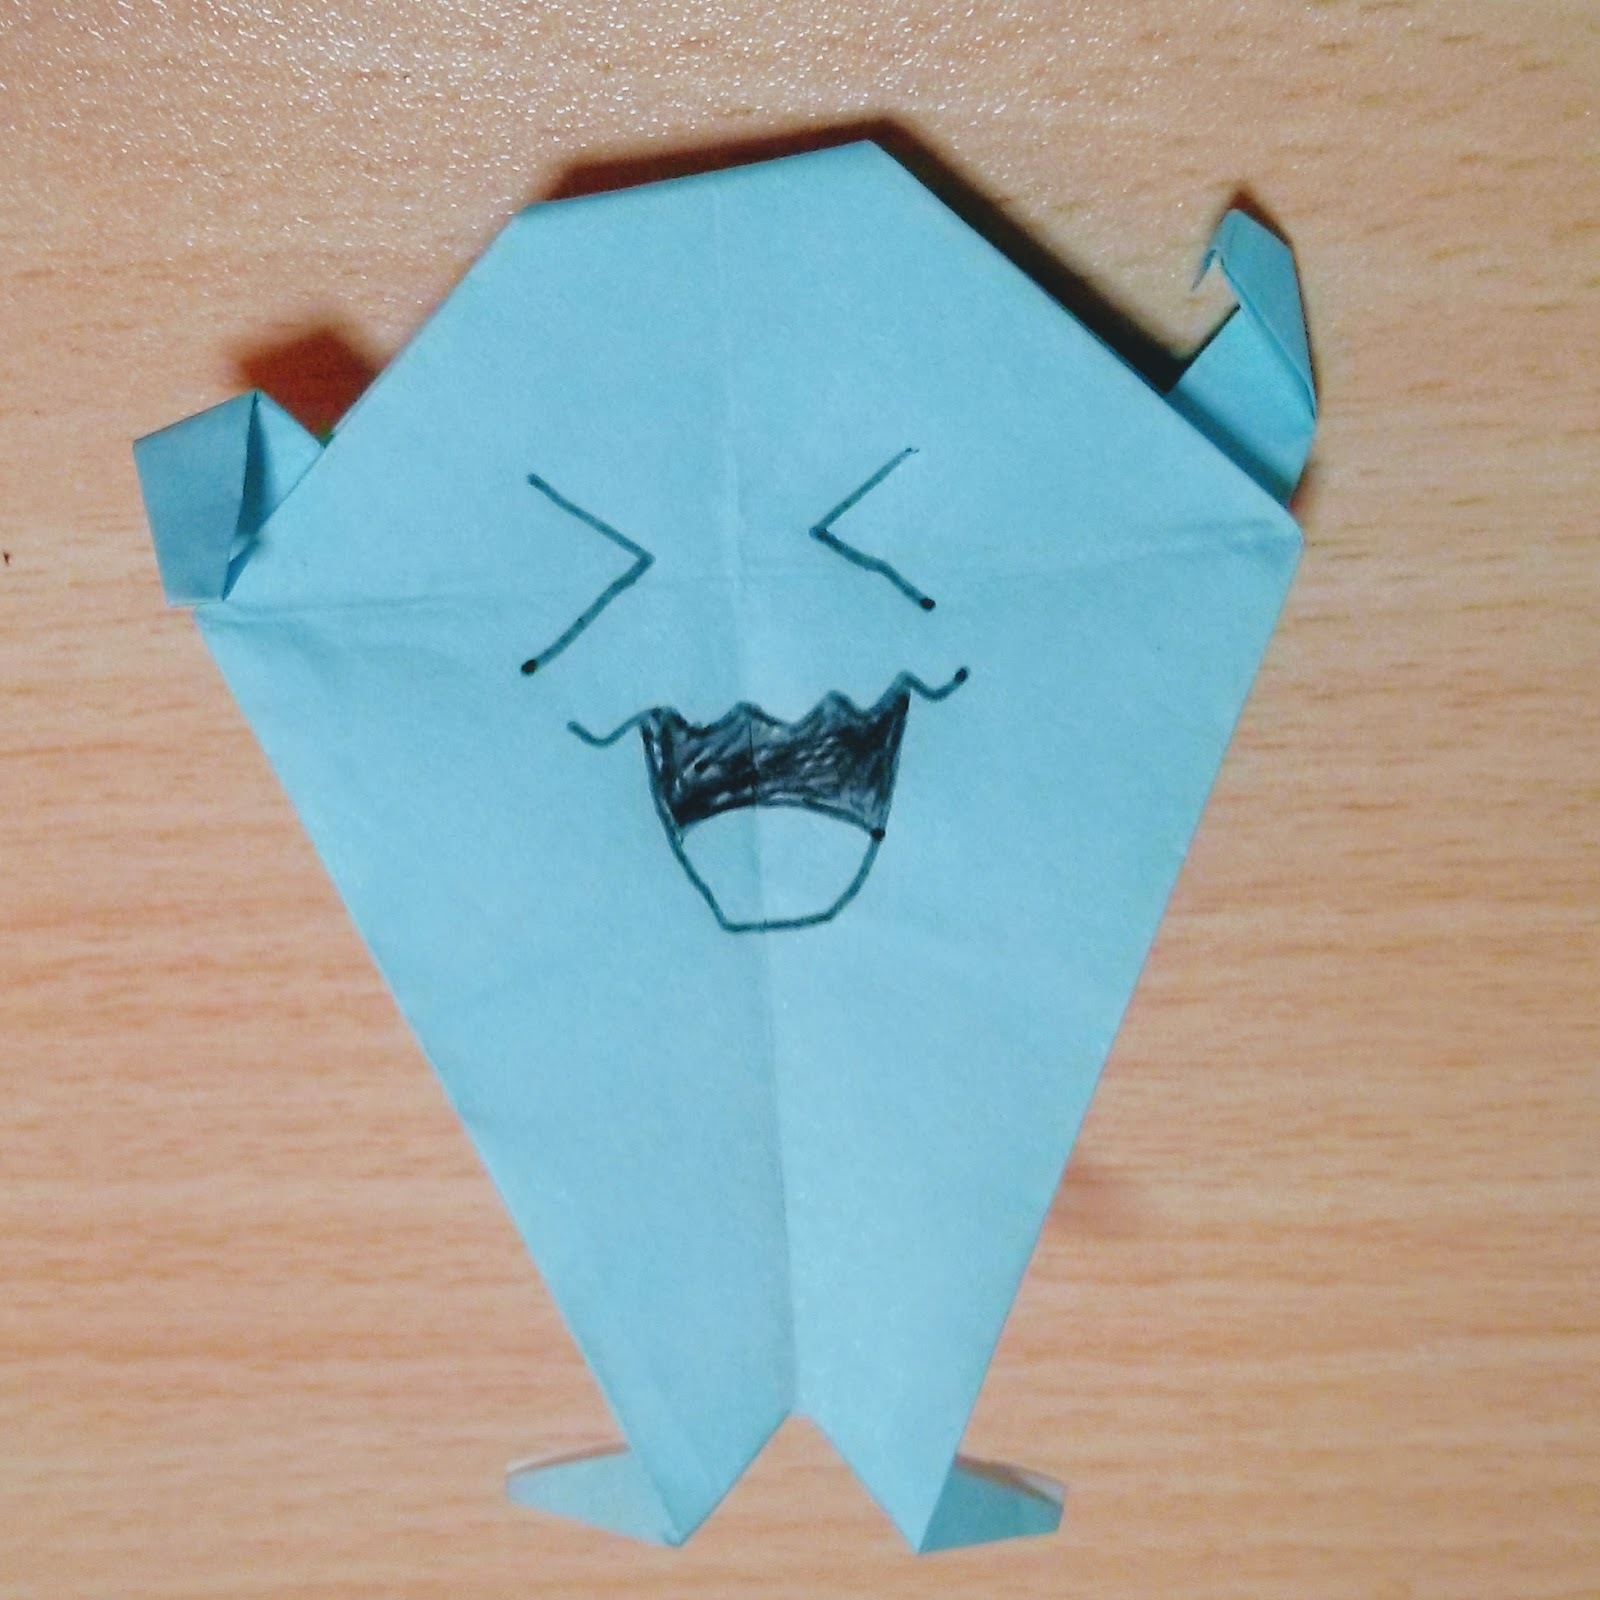 折り紙で作る人気 伝説のポケモンキャラクター18選 全身立体の折り方とは 6ページ目 暮らし の